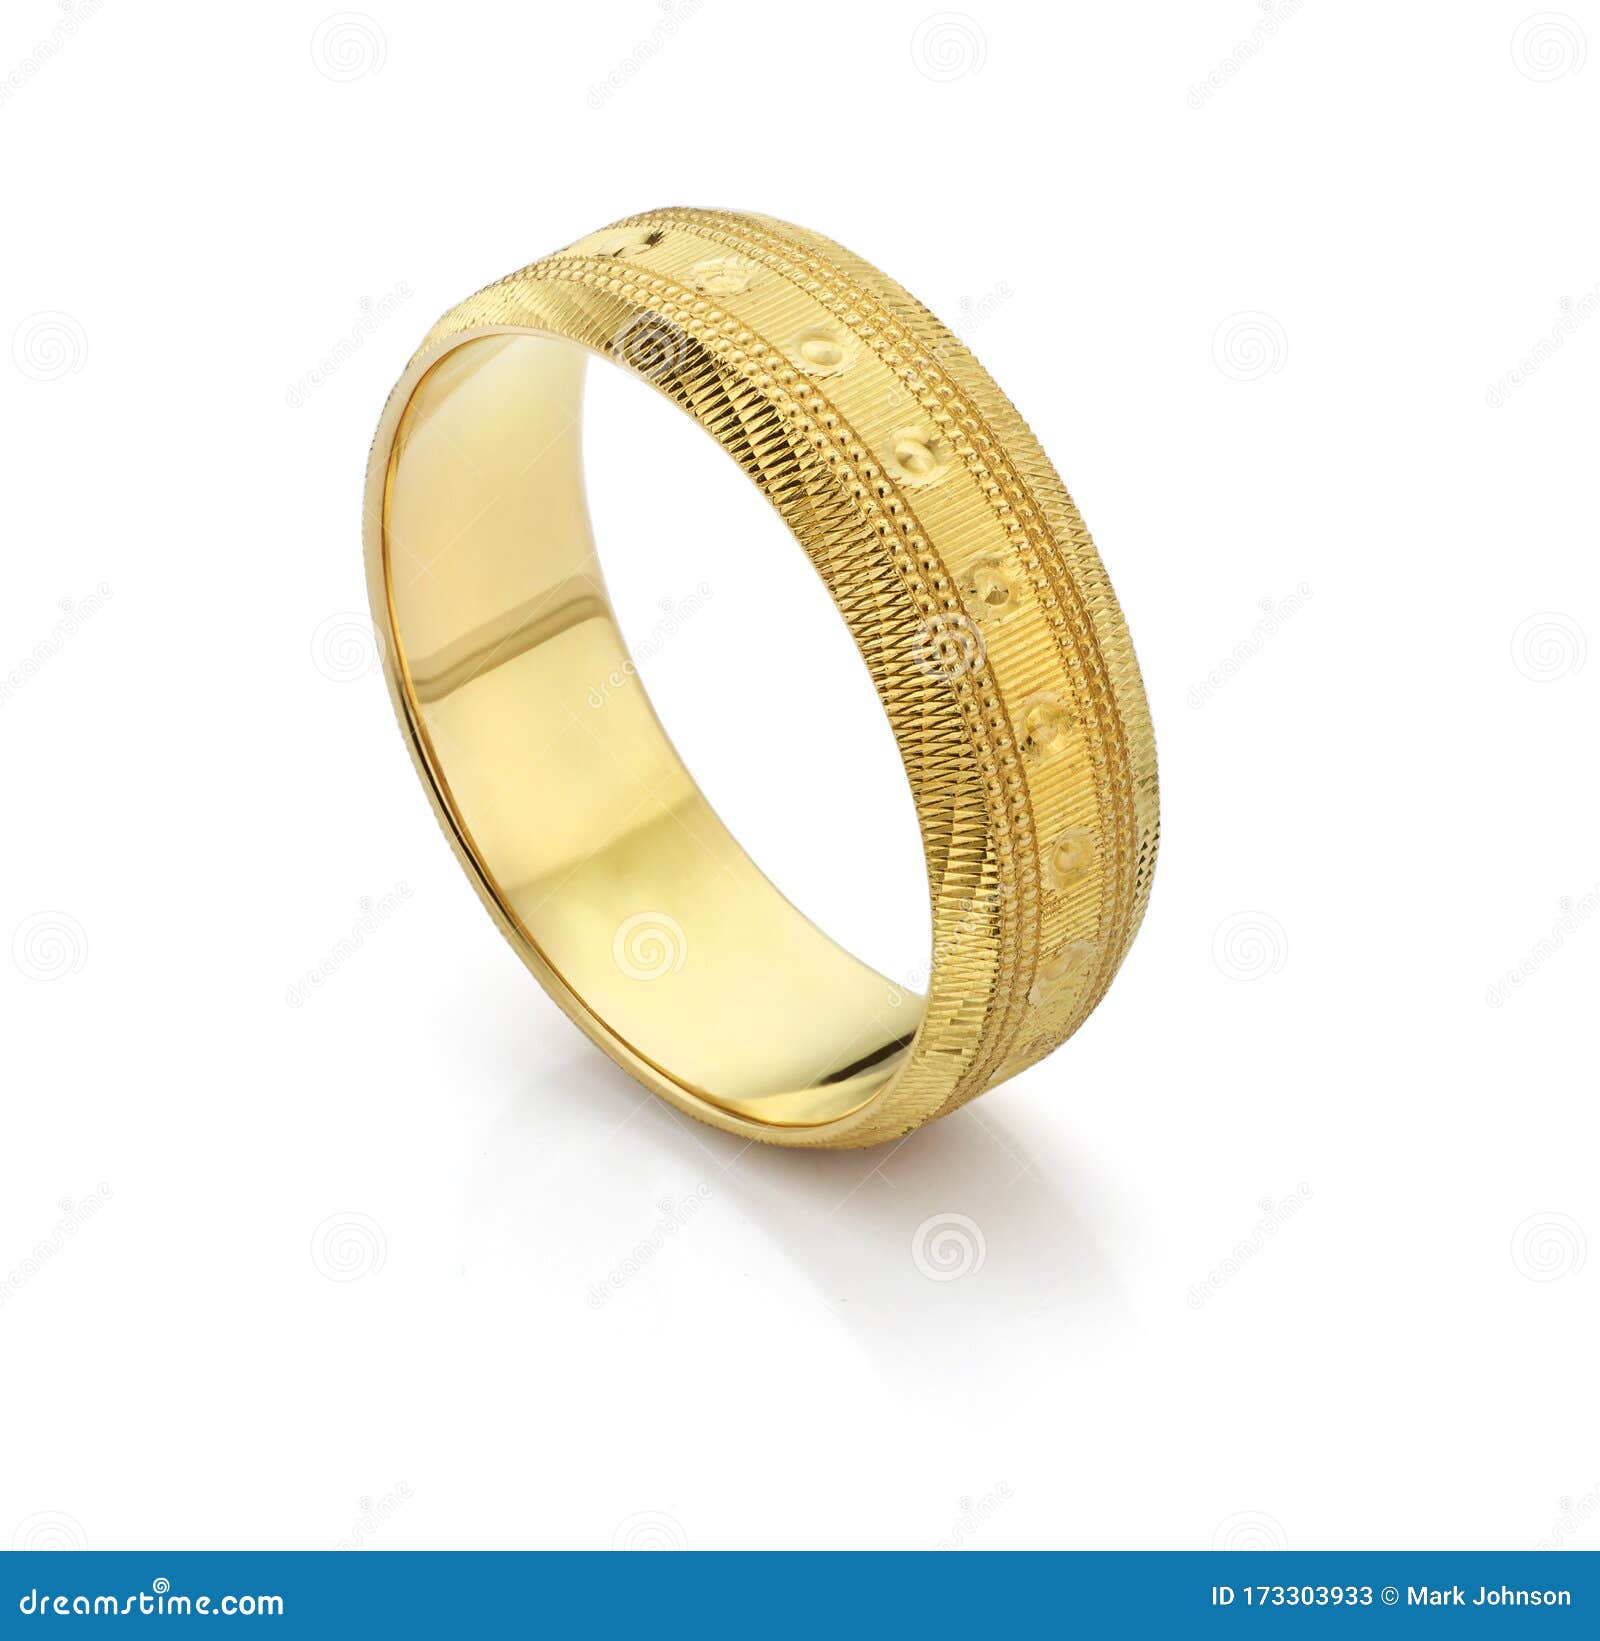 22K Gold Ring For Men - 235-GR7747 in 6.650 Grams